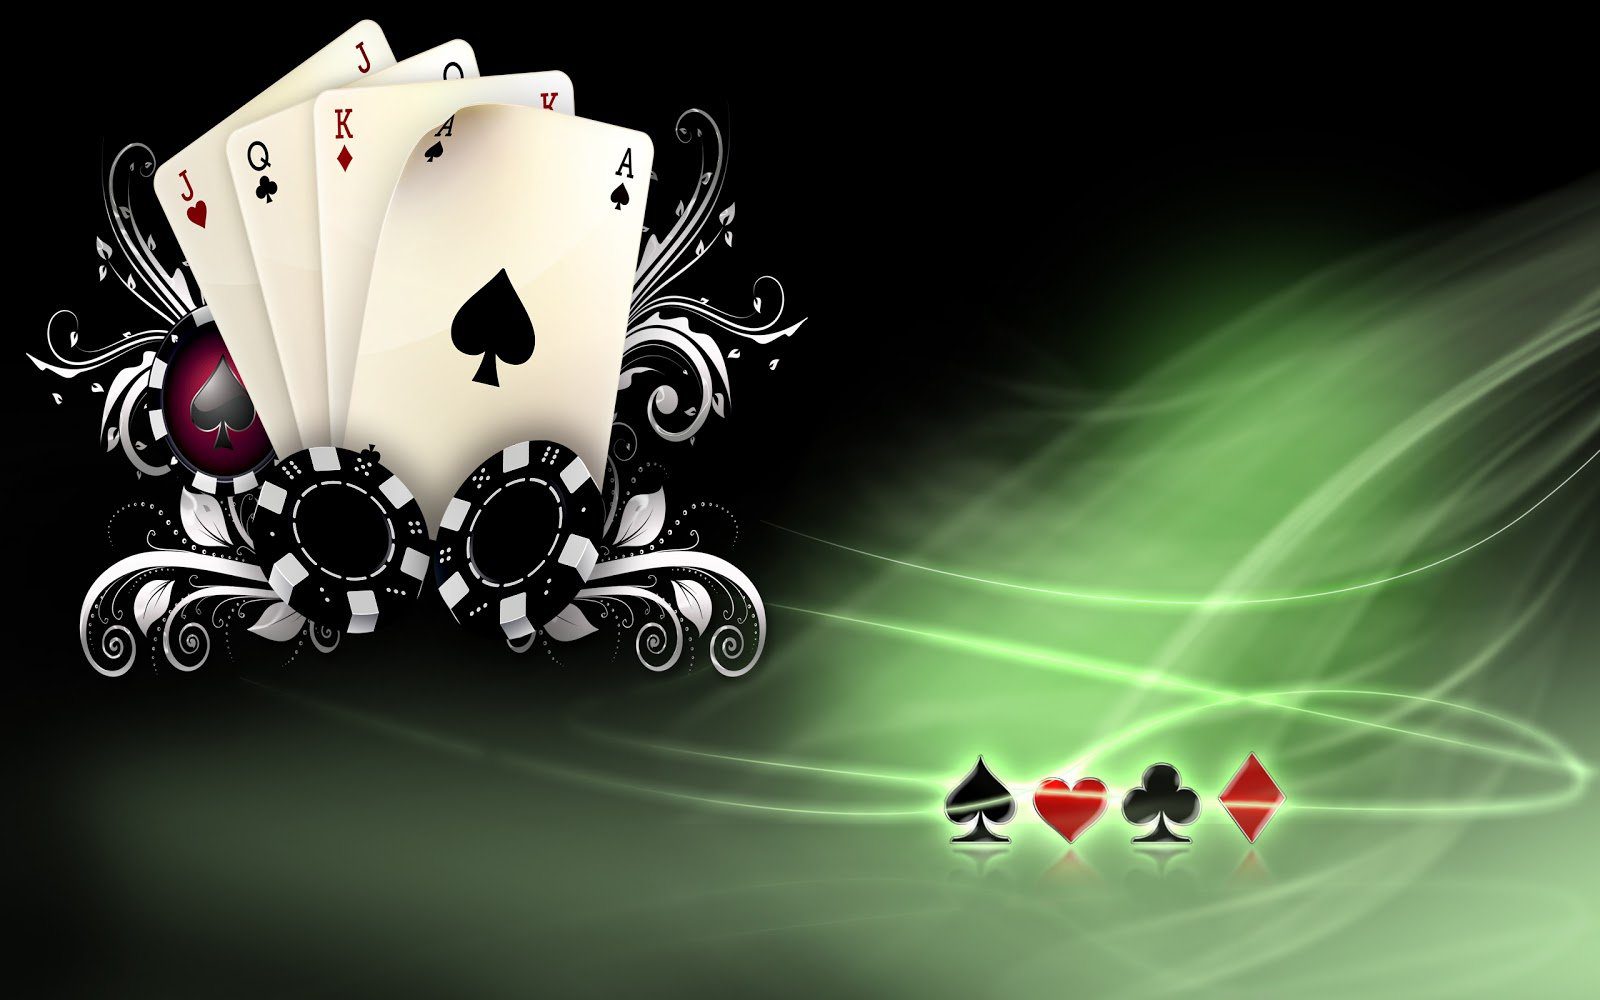 Игра в покер — основные принципы, достоинства, игровые режимы